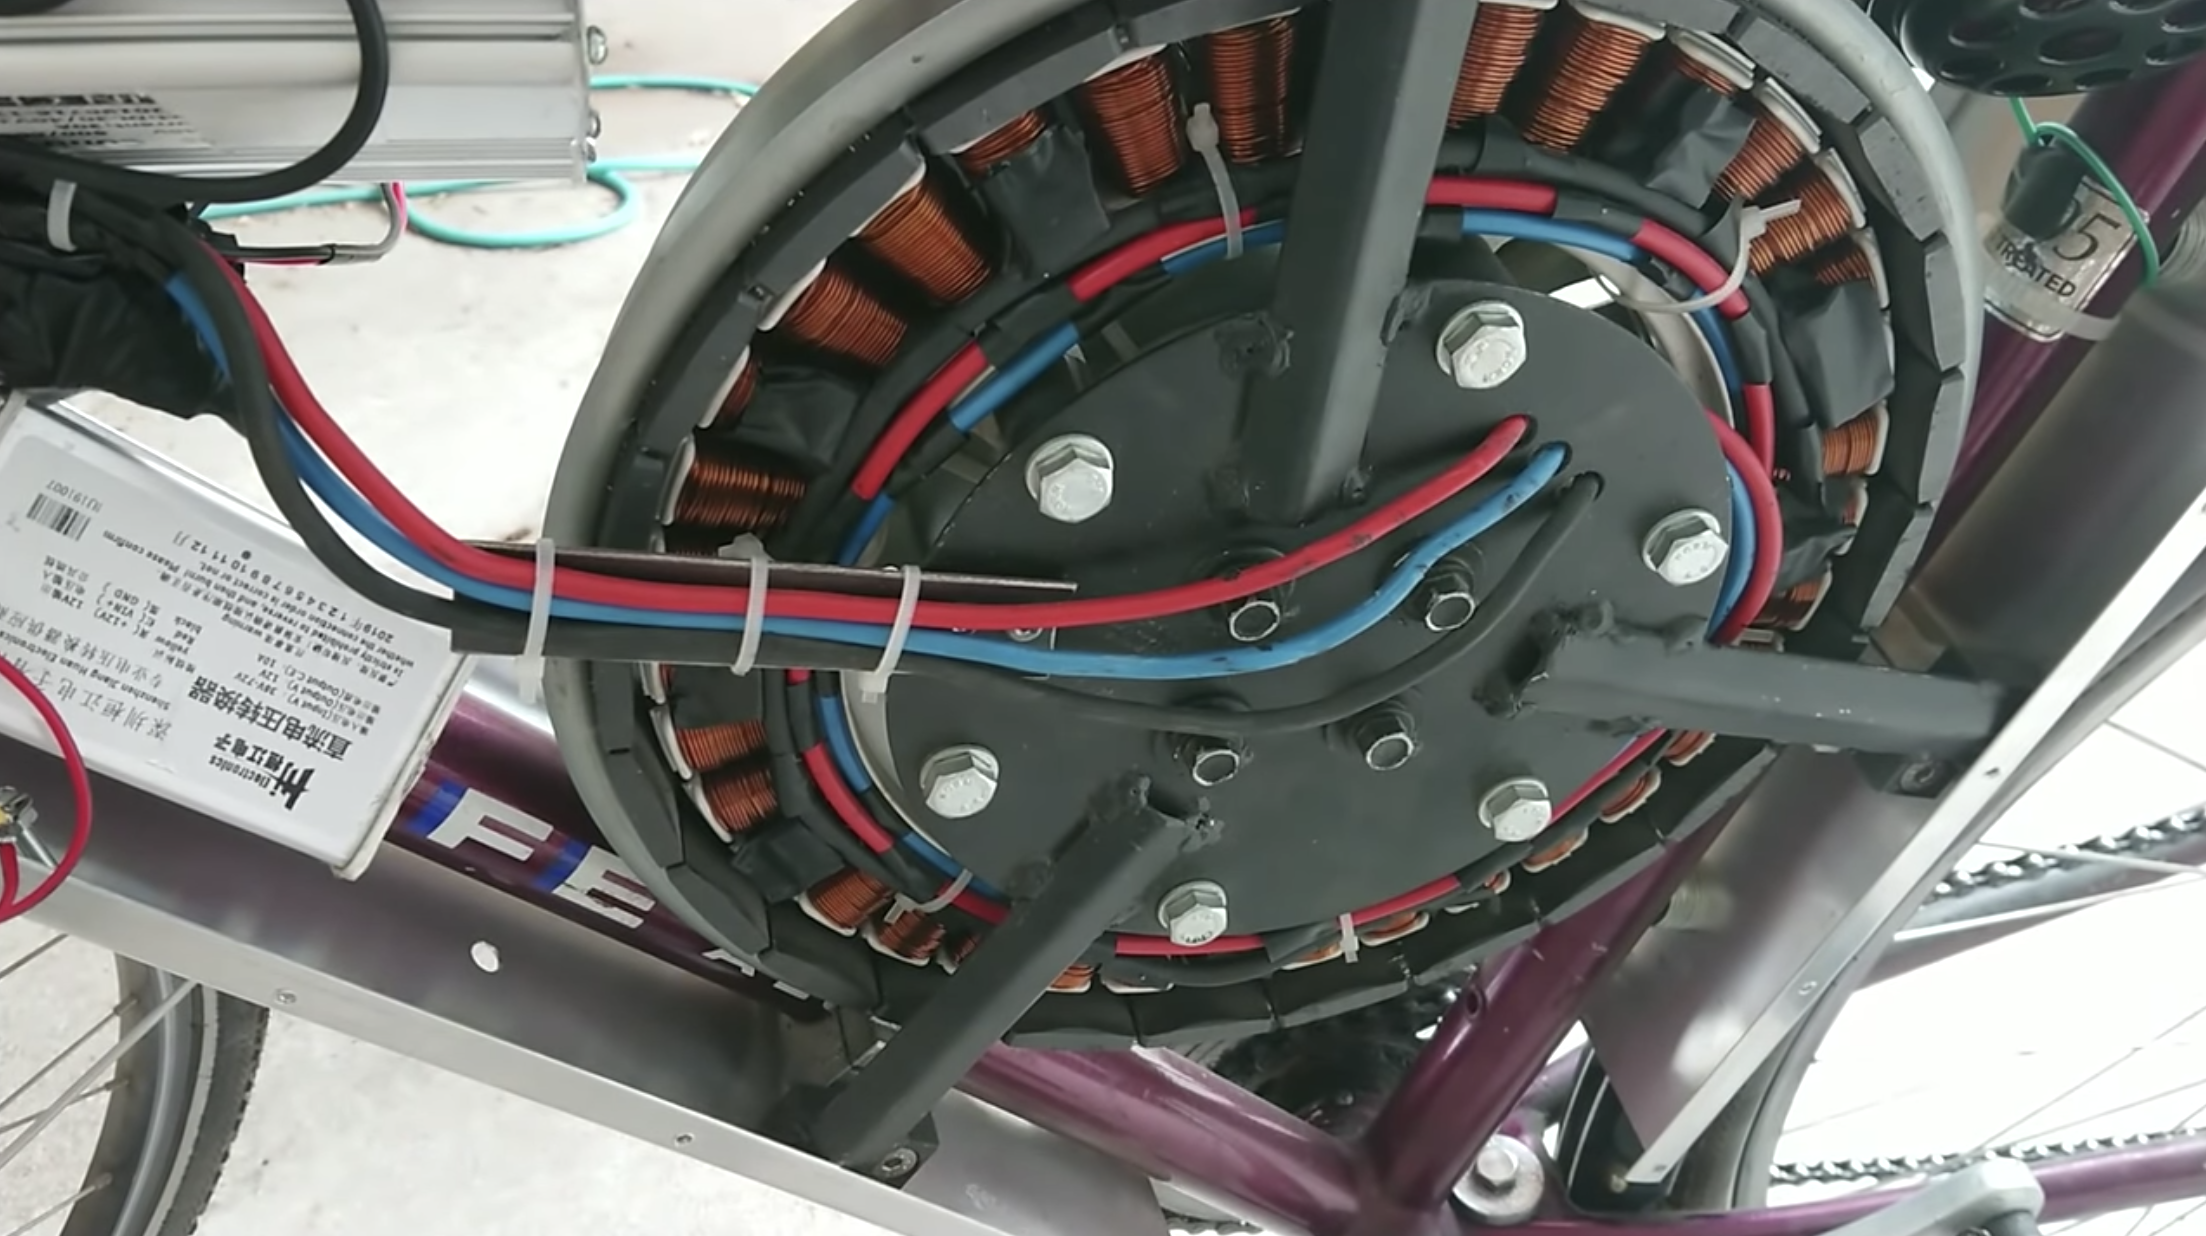 Hombre crea bicicleta eléctrica que llega a los 110km/h con el motor de su lavadora